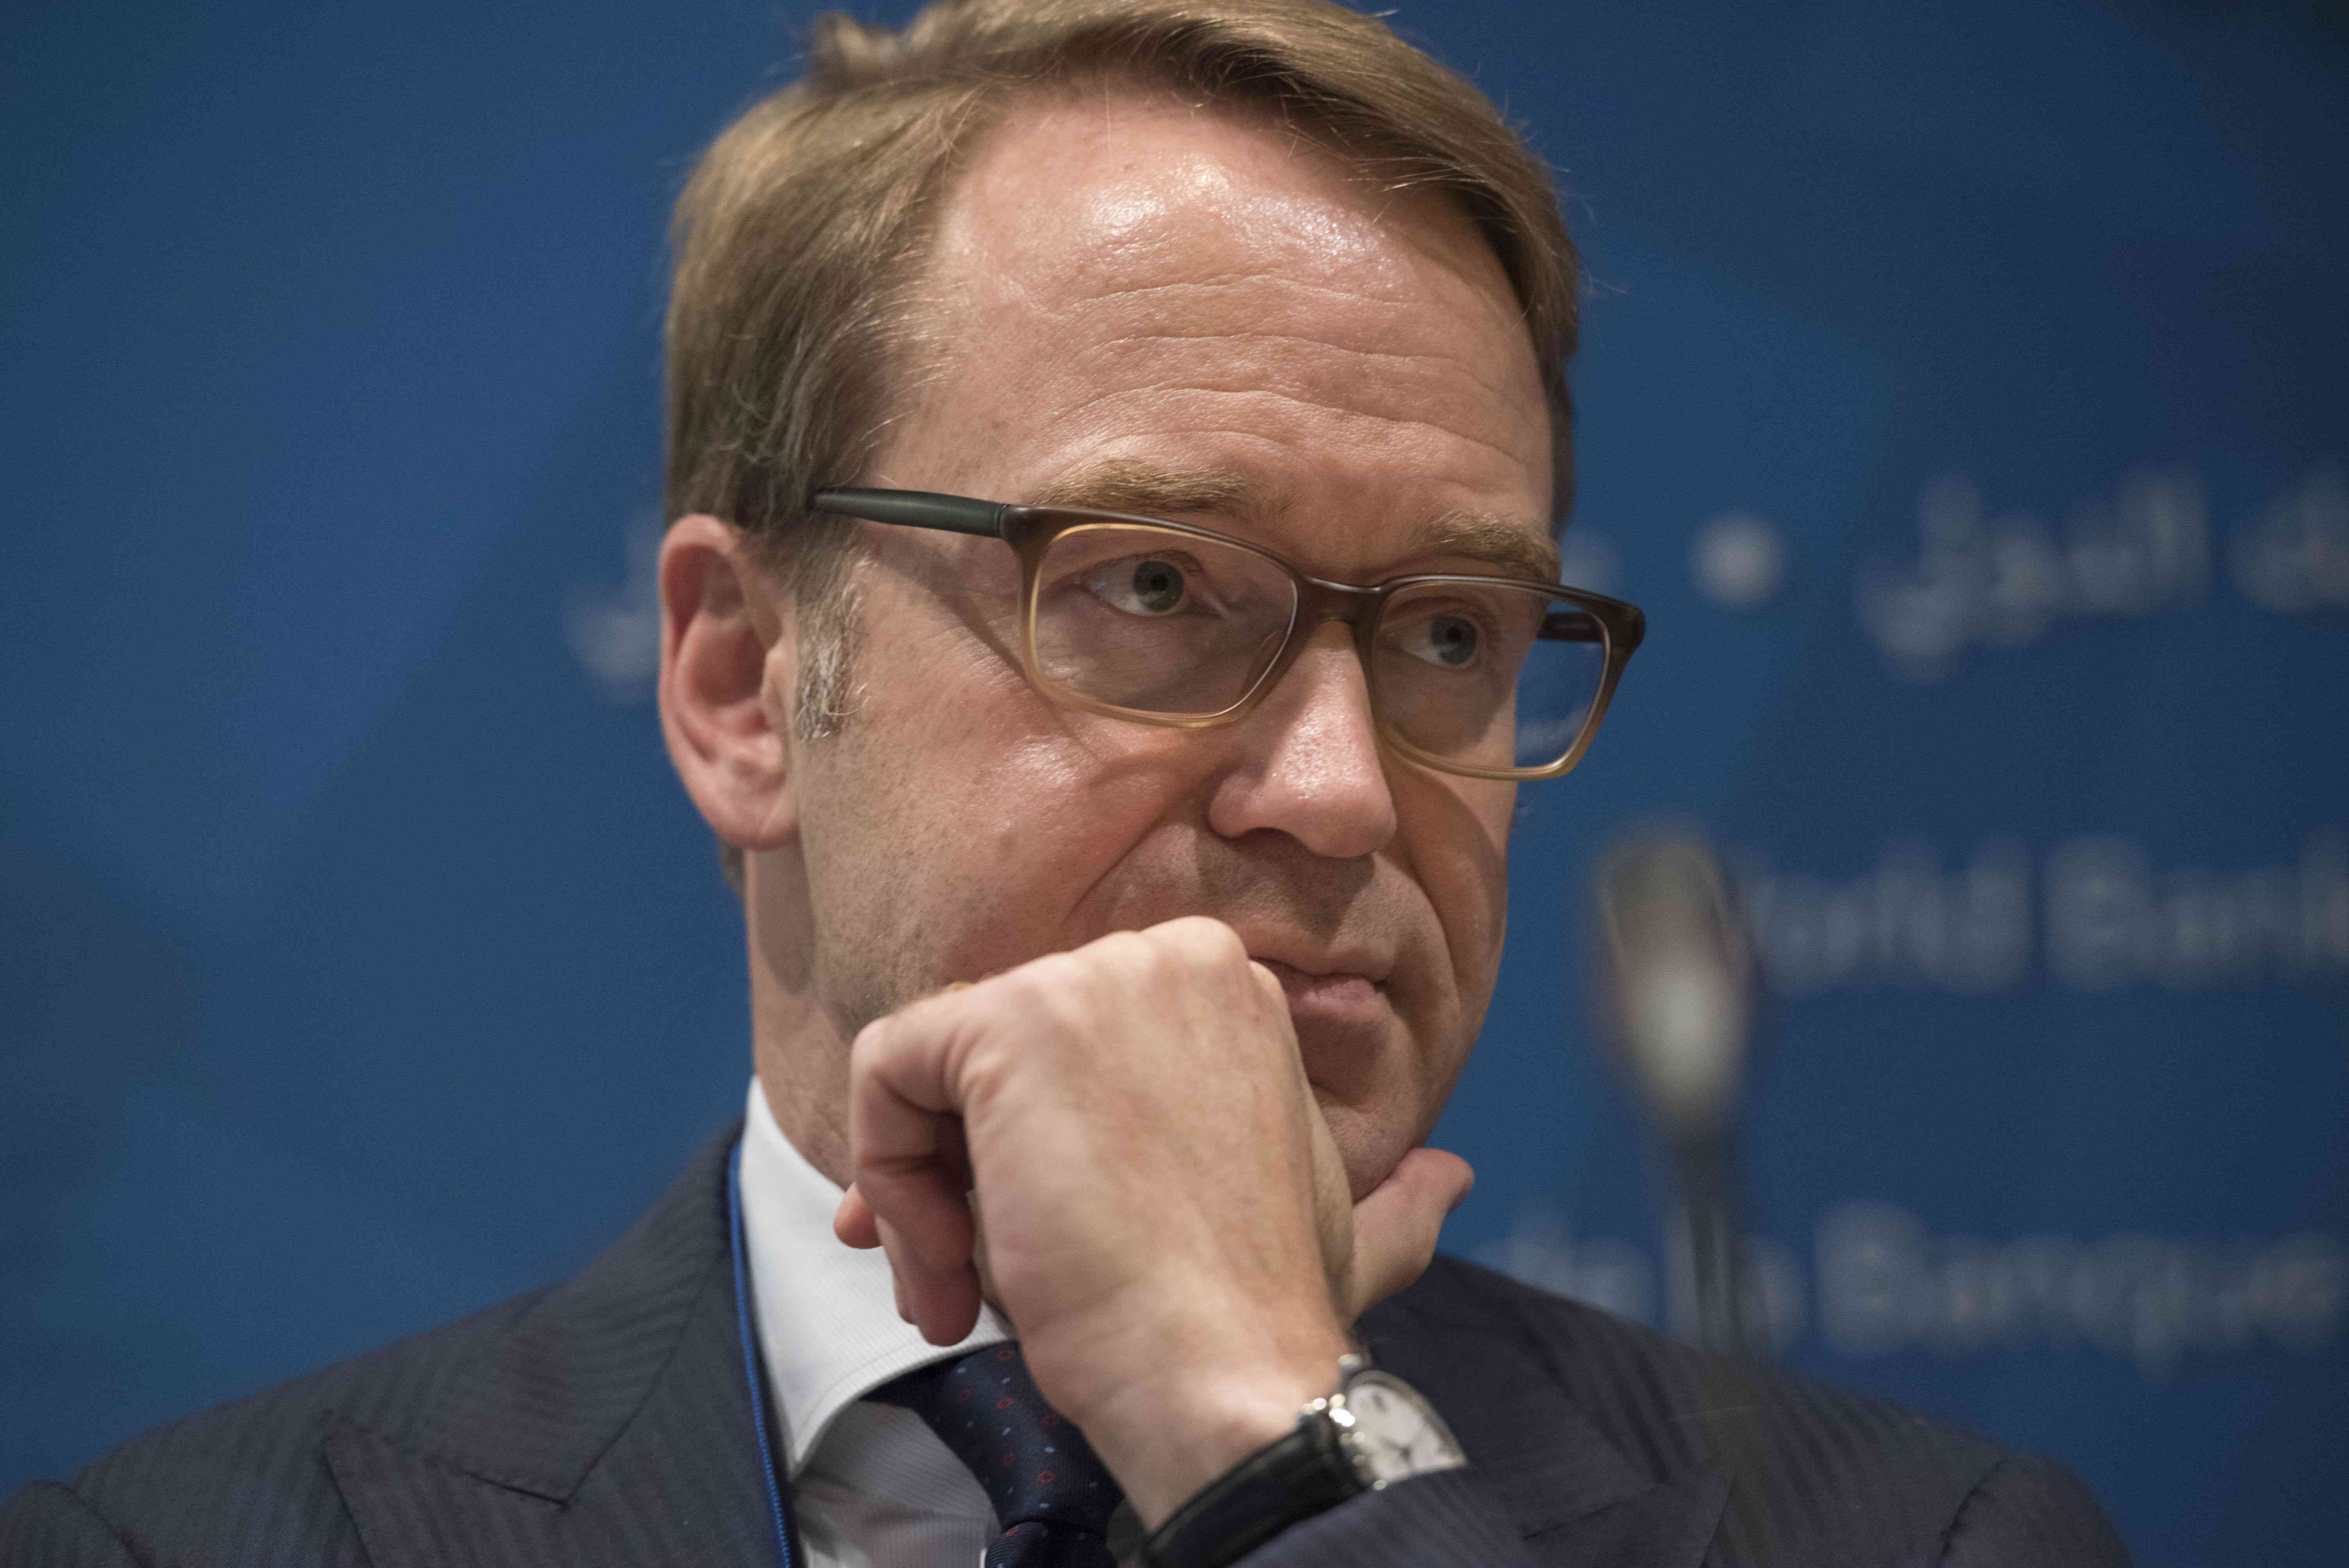 El presidente del Bundesbank, Jens Weidmann, escucha en una rueda de prensa durante una reunión en Washington (AP)